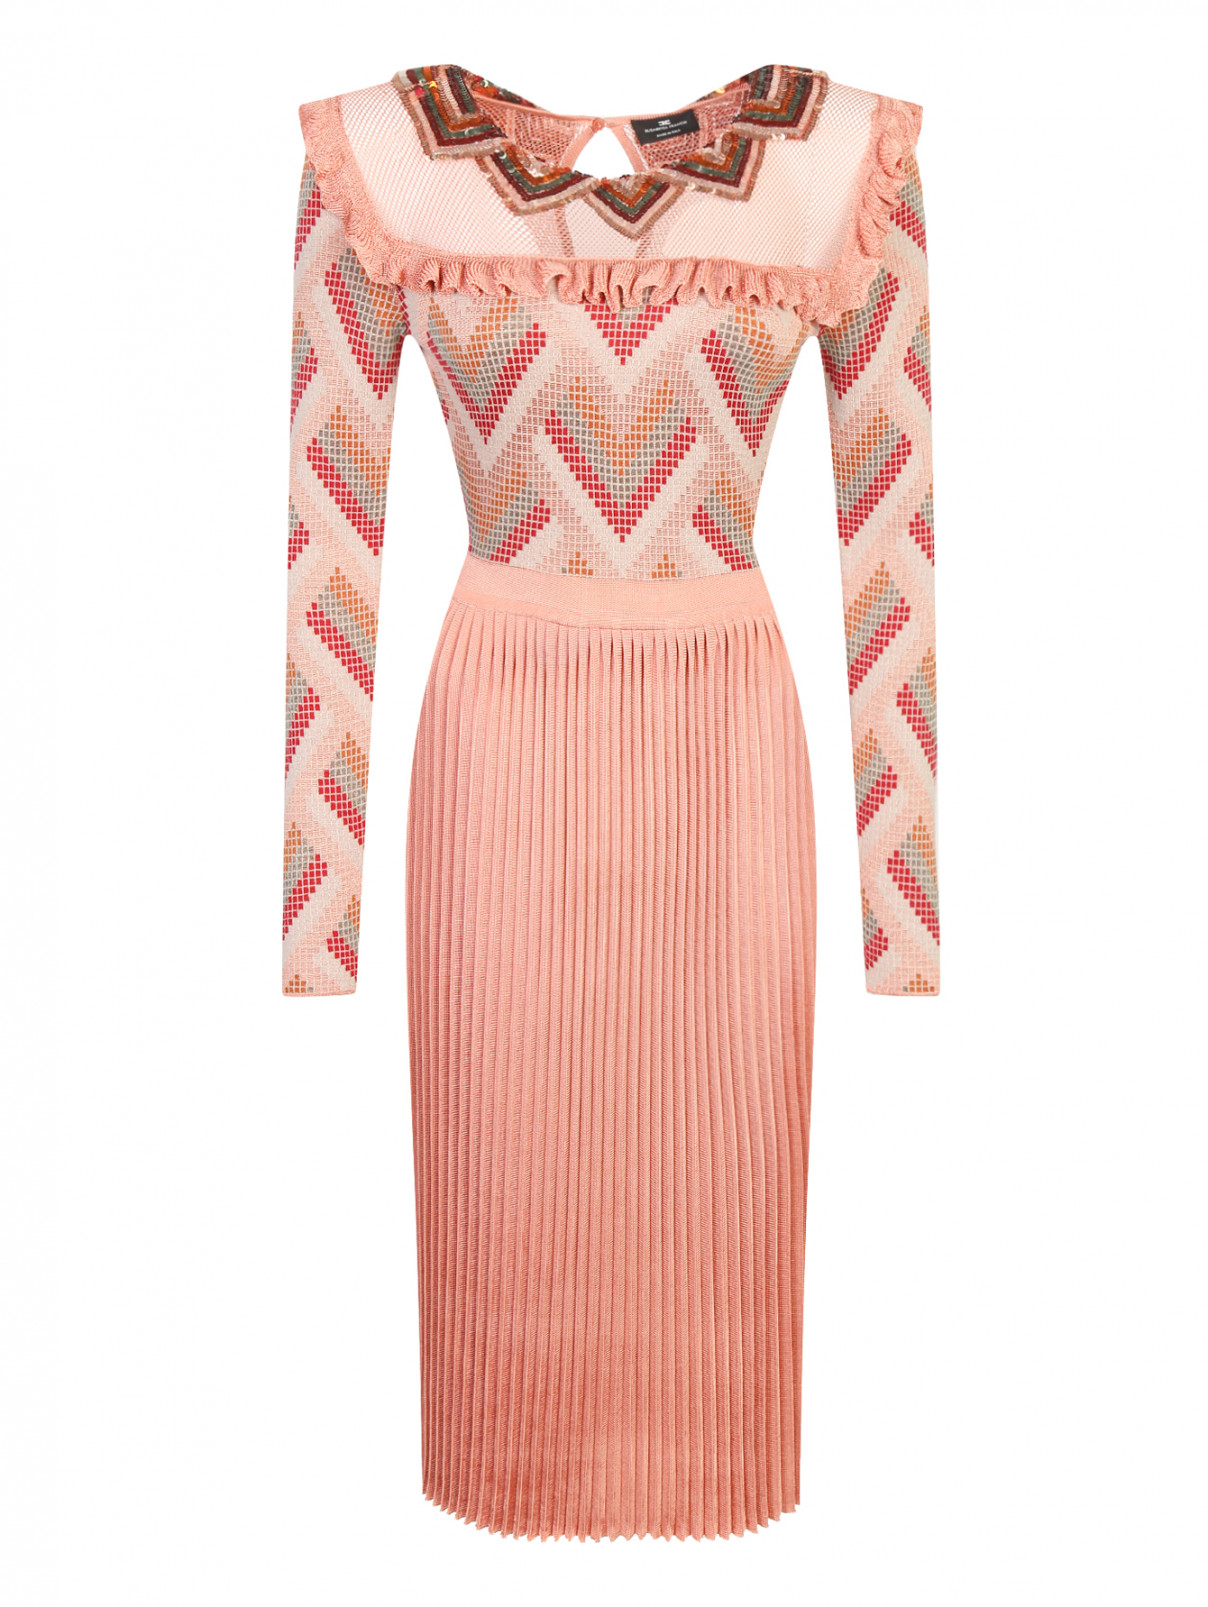 Платье-миди с узором и декоративным воротником, декорированный пайетками Elisabetta Franchi  –  Общий вид  – Цвет:  Розовый